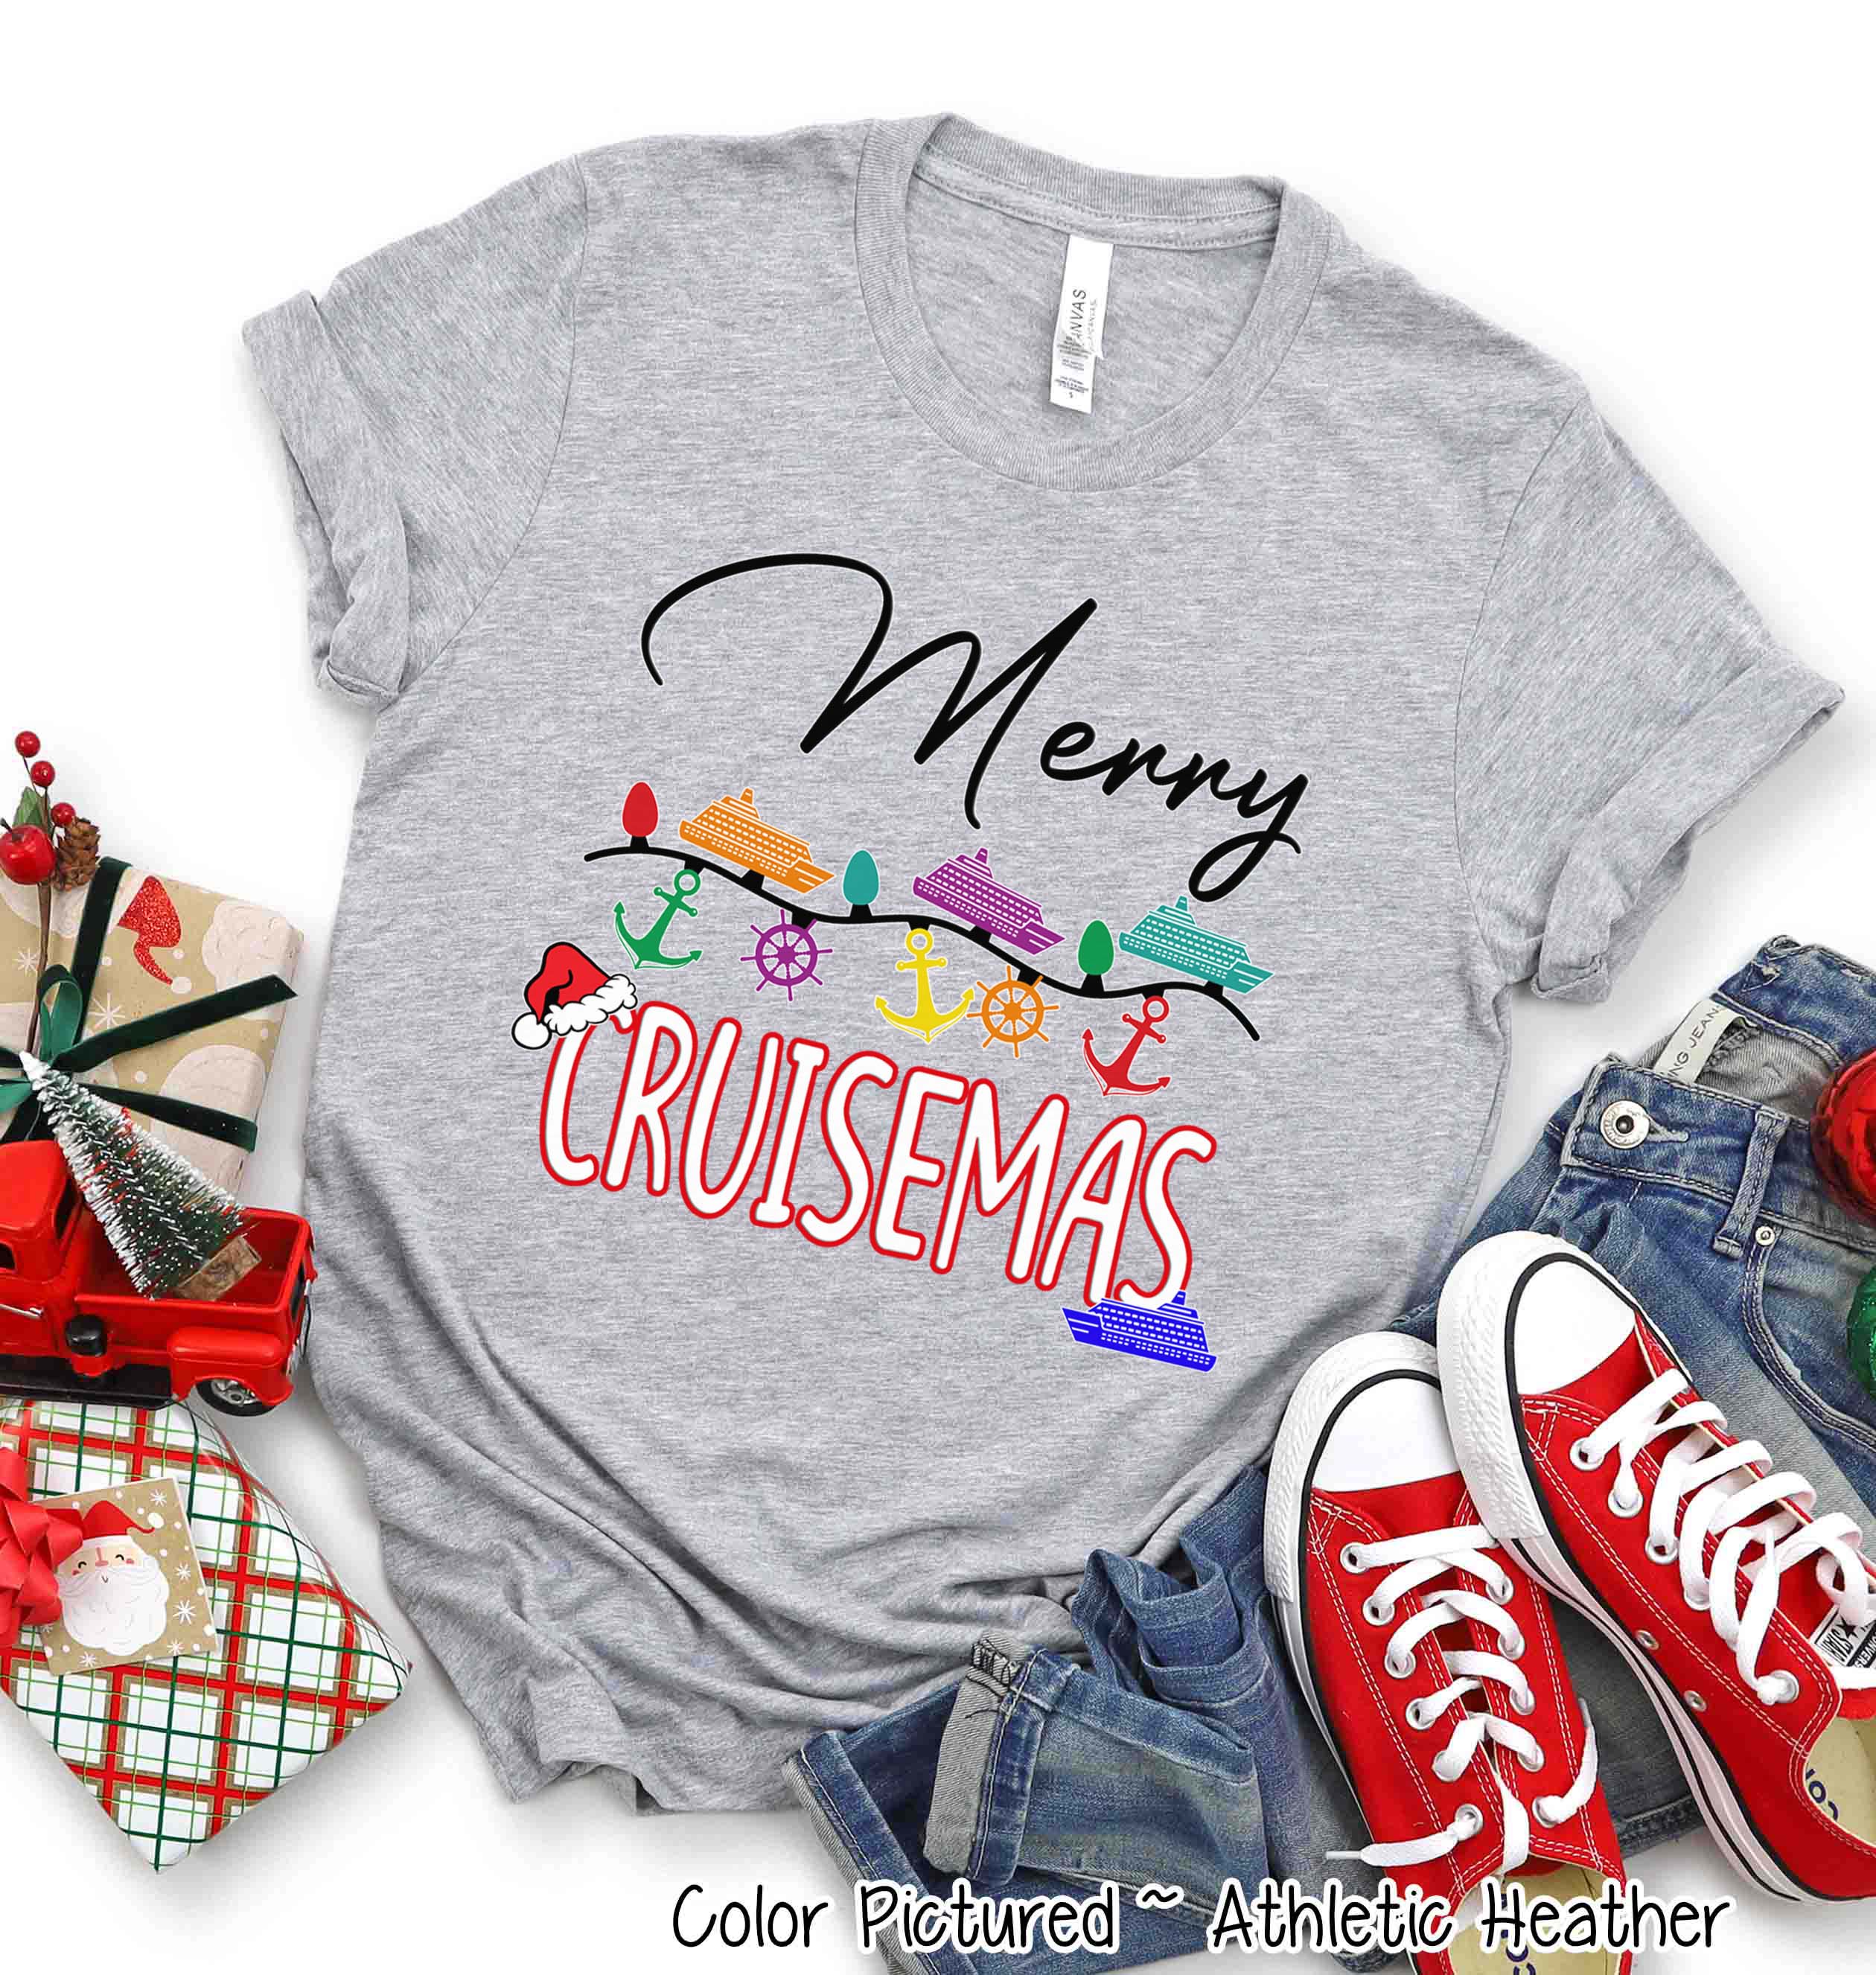 Merry Cruismas Christmas Cruise Tee or Sweatshirt